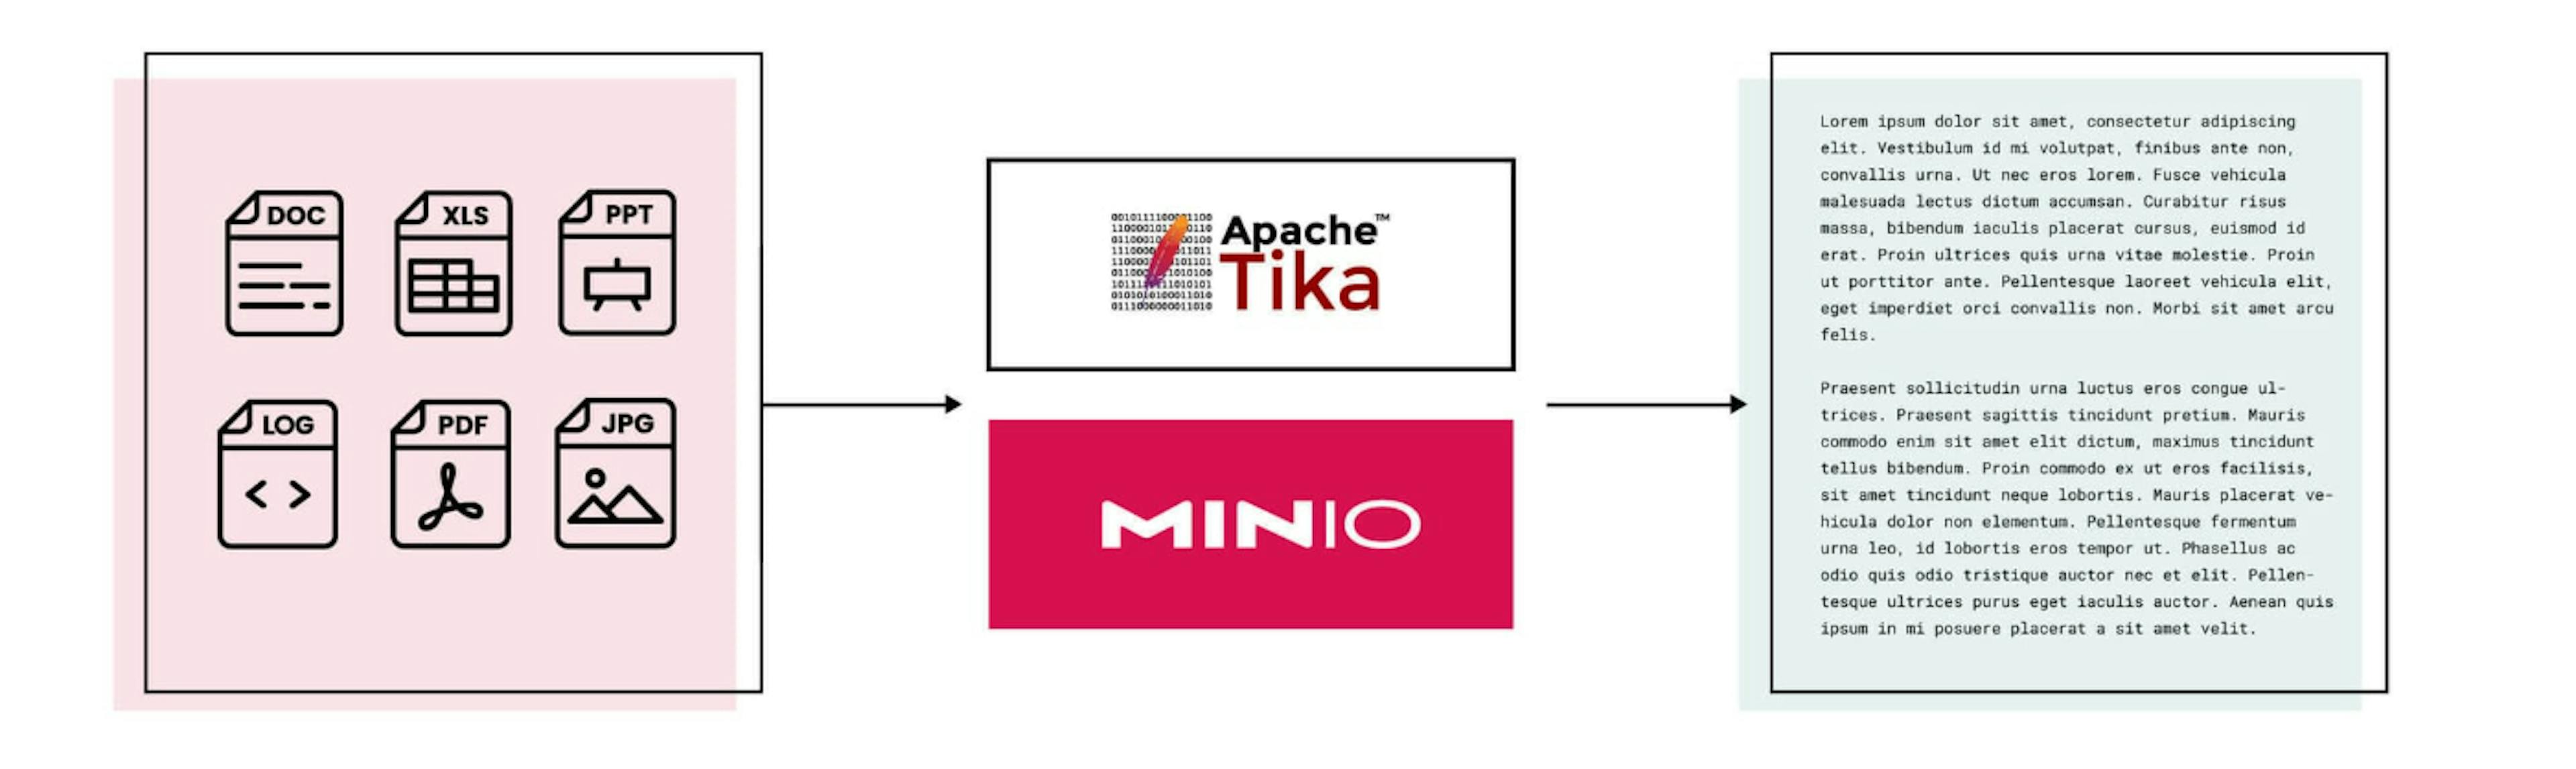 featured image - 자동화된 텍스트 추출 및 분석을 위해 MinIO 및 Apache Tika 활용